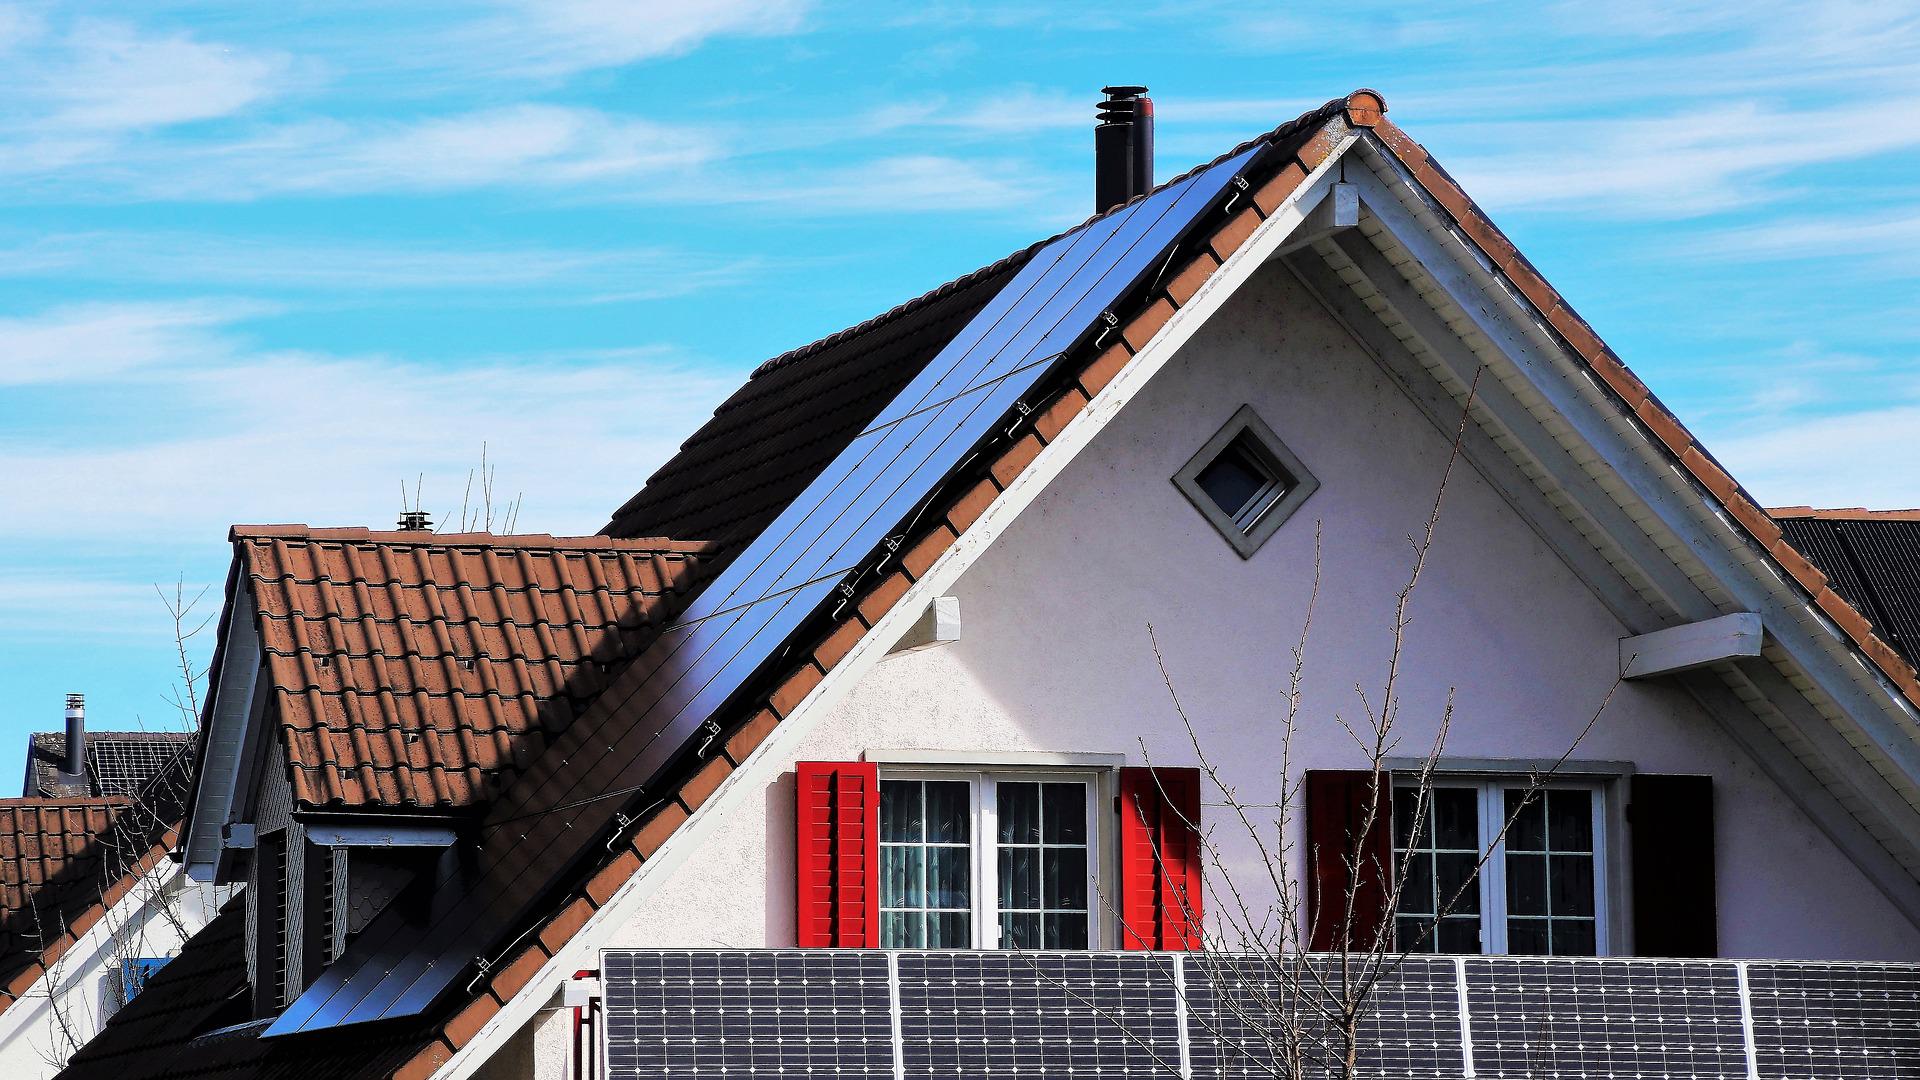 Ventajas sociales, energéticas, ambientales y económicas del autoconsumo fotovoltaico